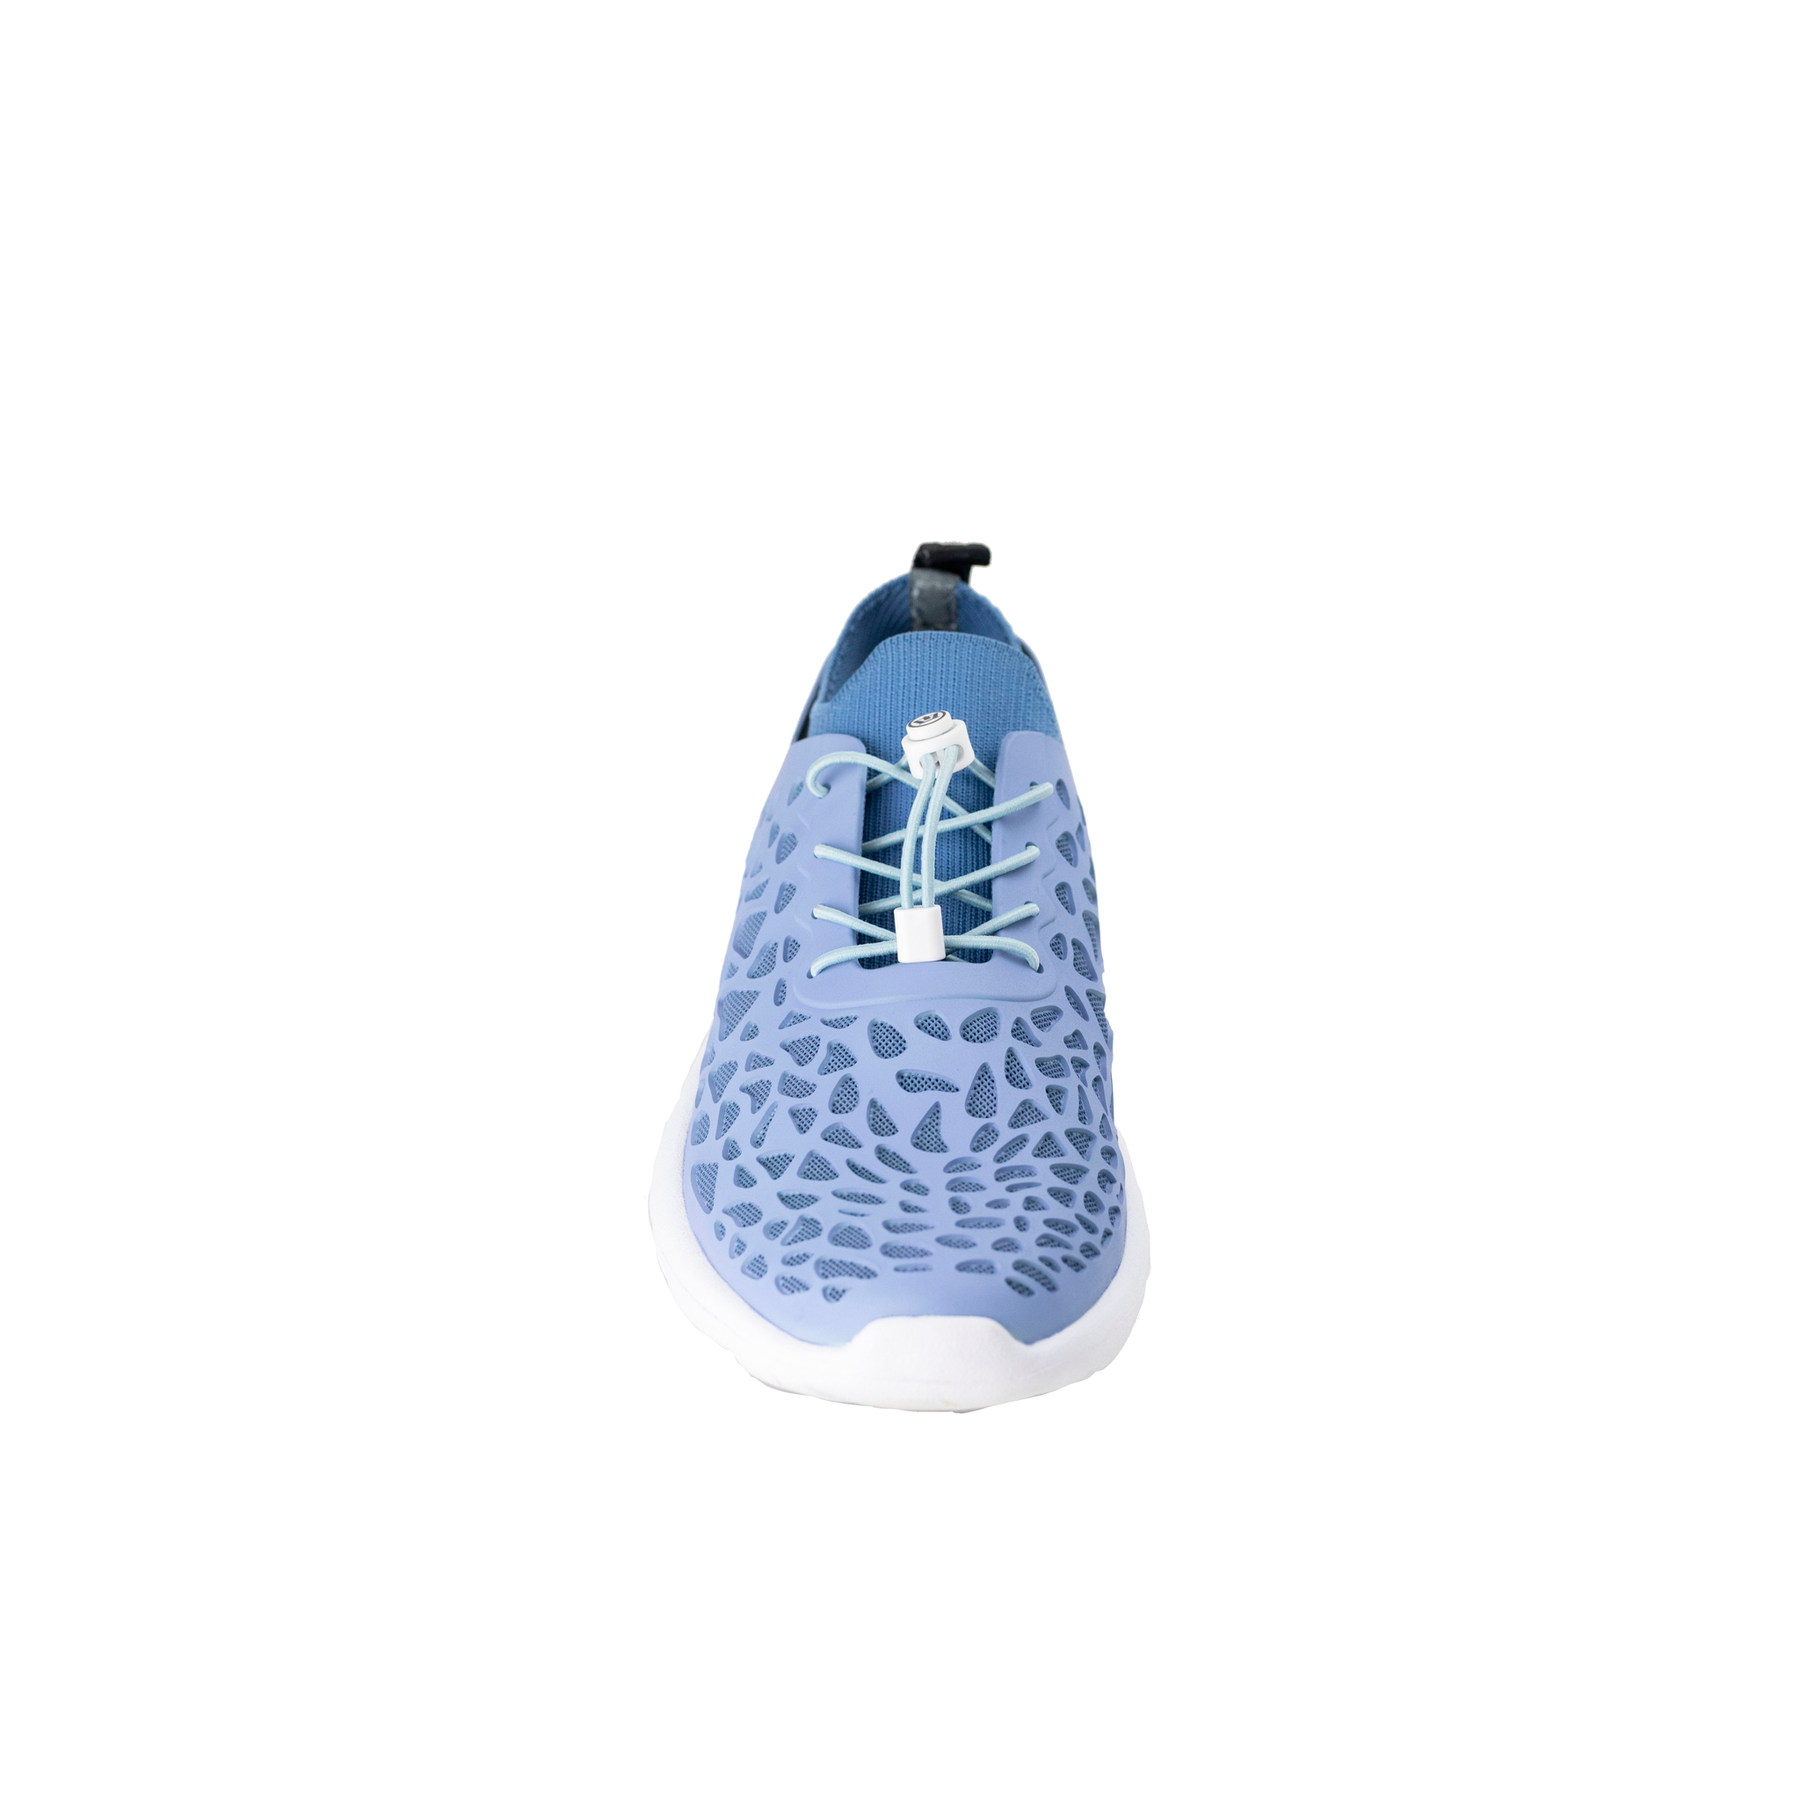 Tetra Closed Toe Dri-Fit Big Kid's Water Shoes by CROSSKIX - Sportsman Gear